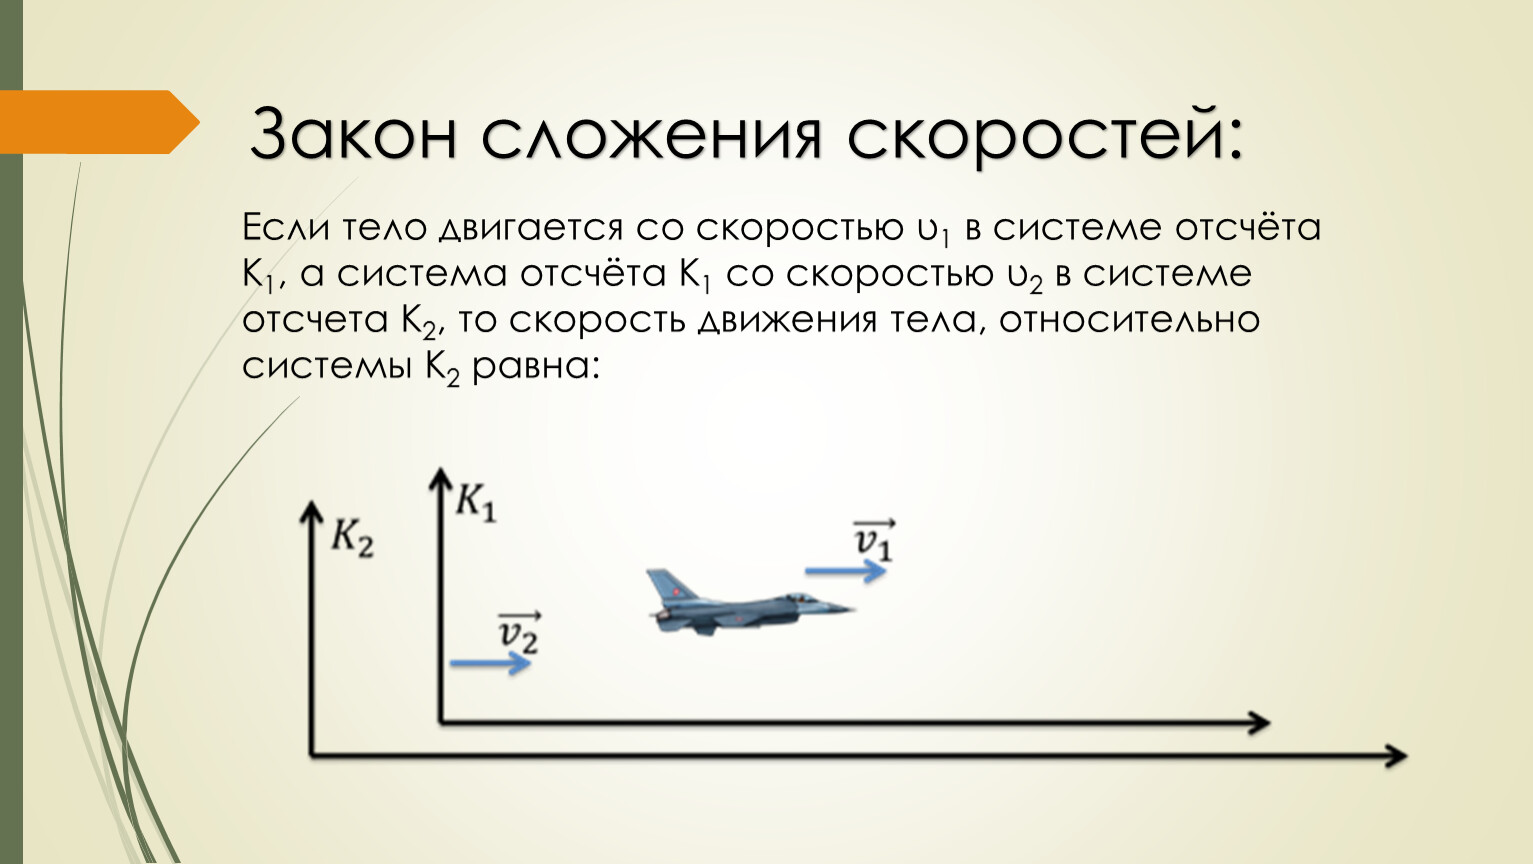 Самолет находящийся в полете преодолевает 230 м. Скорость самолета. Самолет летит со скоростью. Скорость самолета относительно земли. Скорость самолёта пассажирского в полете.